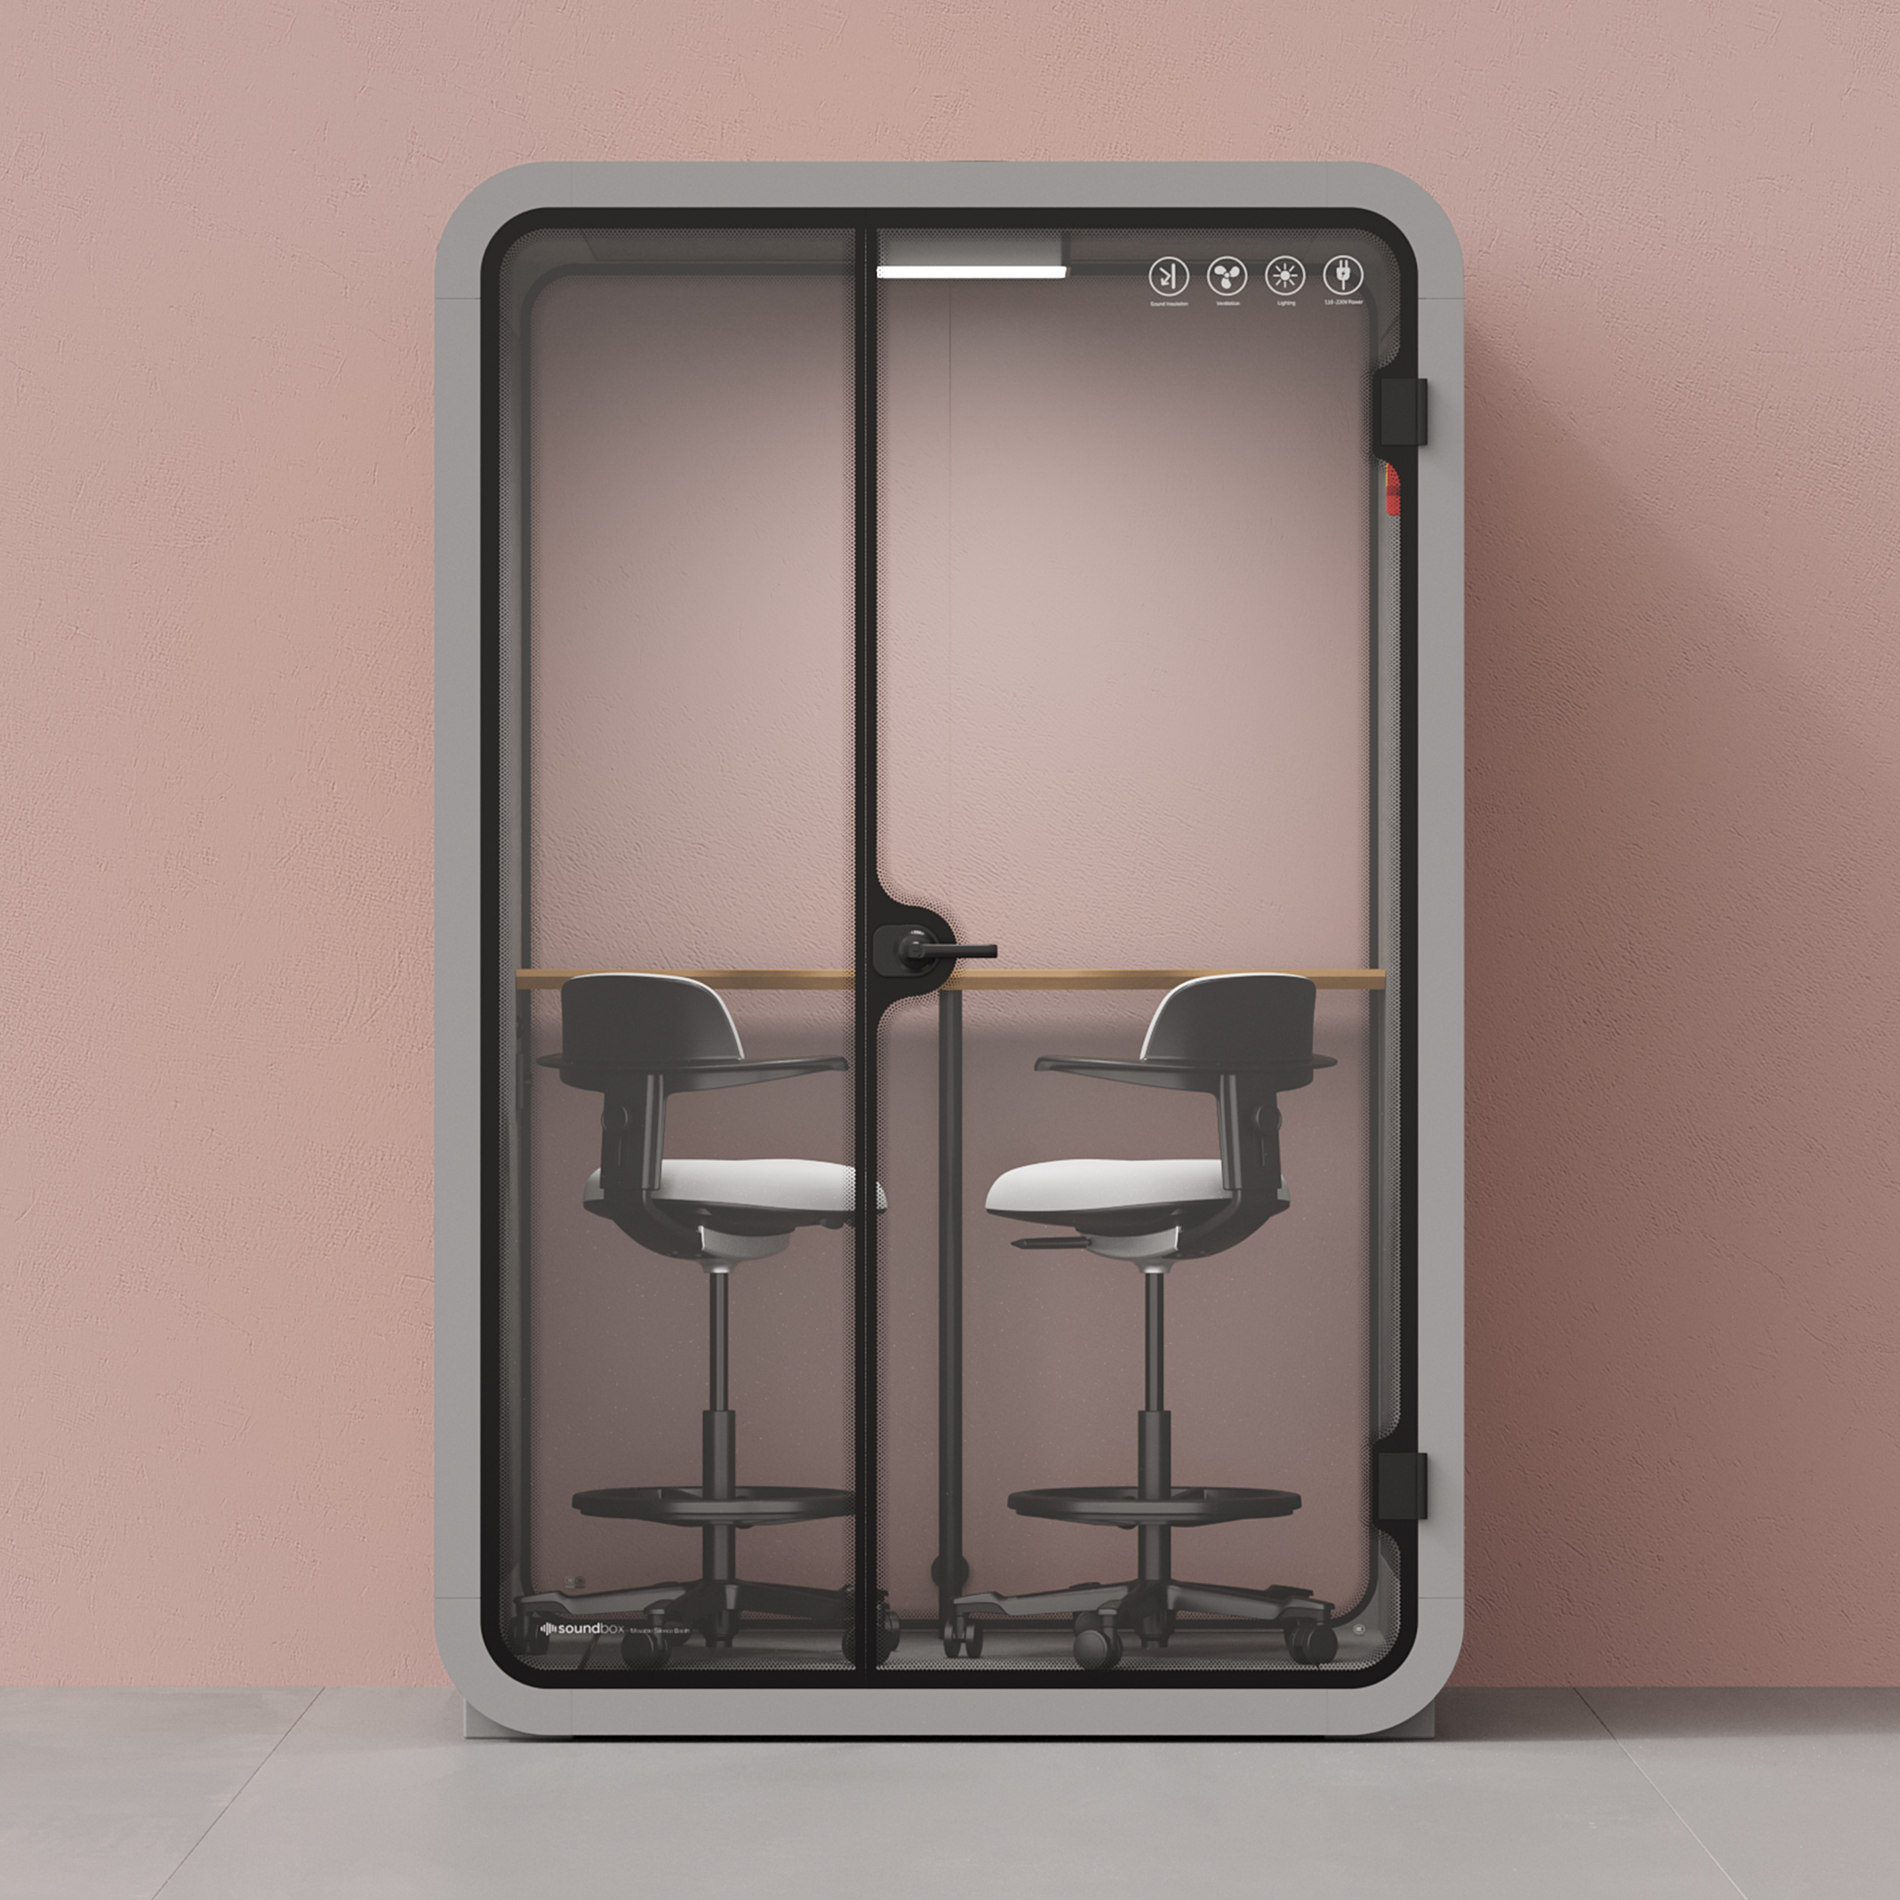 Quell Caseta de Oficina para Dos PersonasLight Grey / Dark Gray / Dual Zoom Room + Device Shelf + 2 Barstools